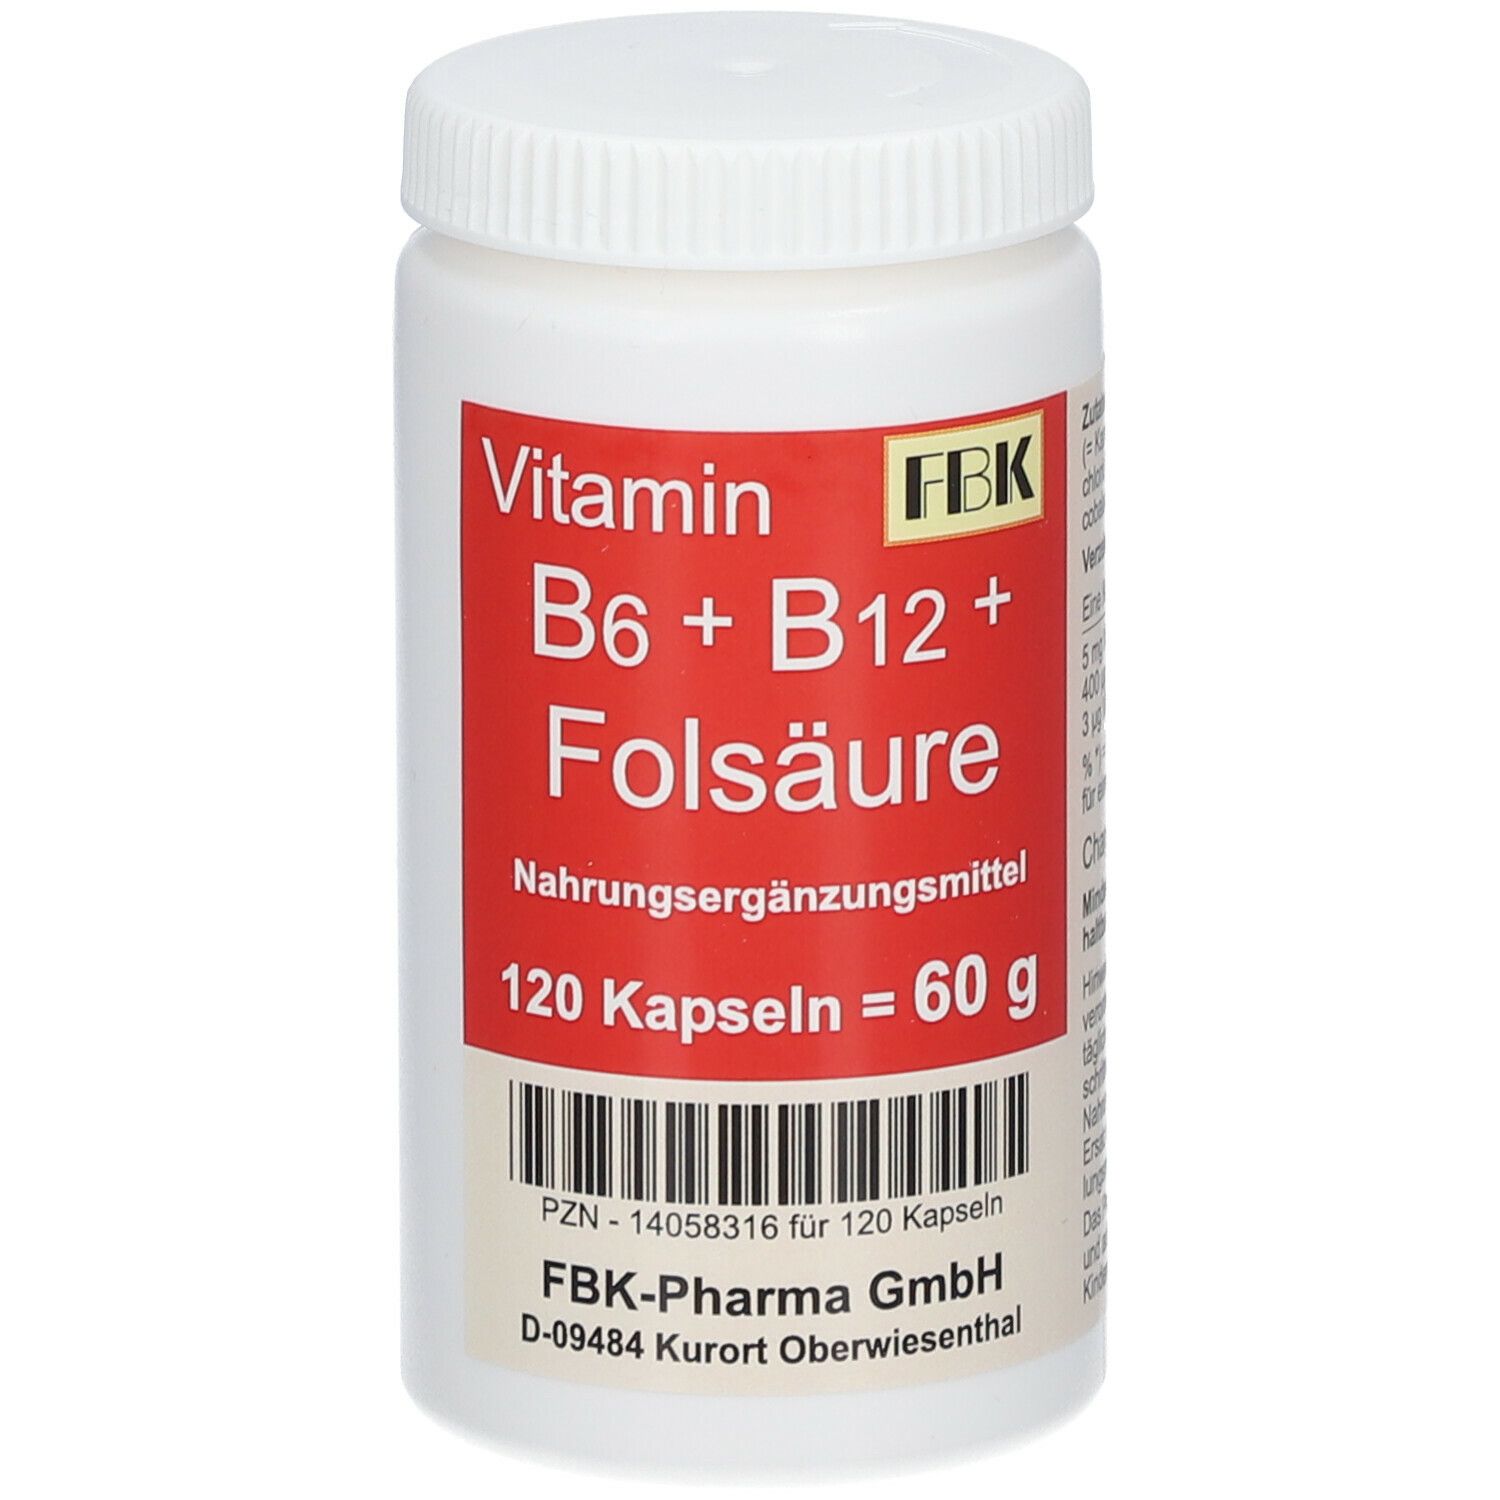 Image of Vitamin B6+ B12+ Folsäure